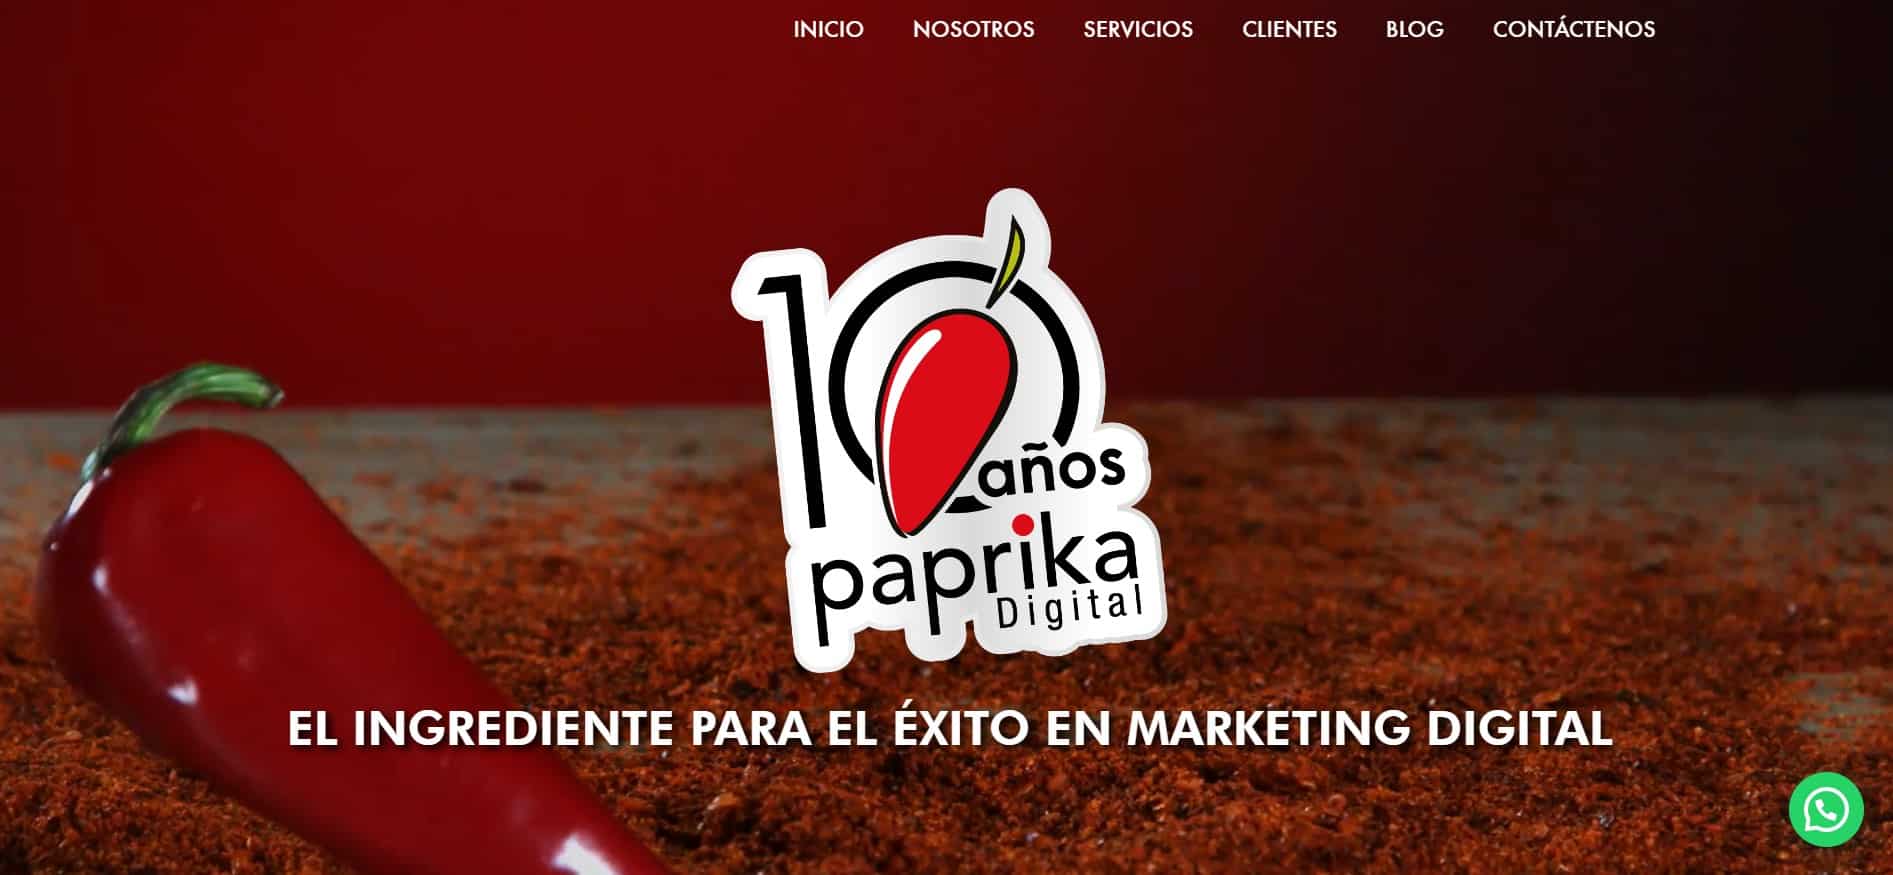 Paproka agencia de SEO en Costa Rica